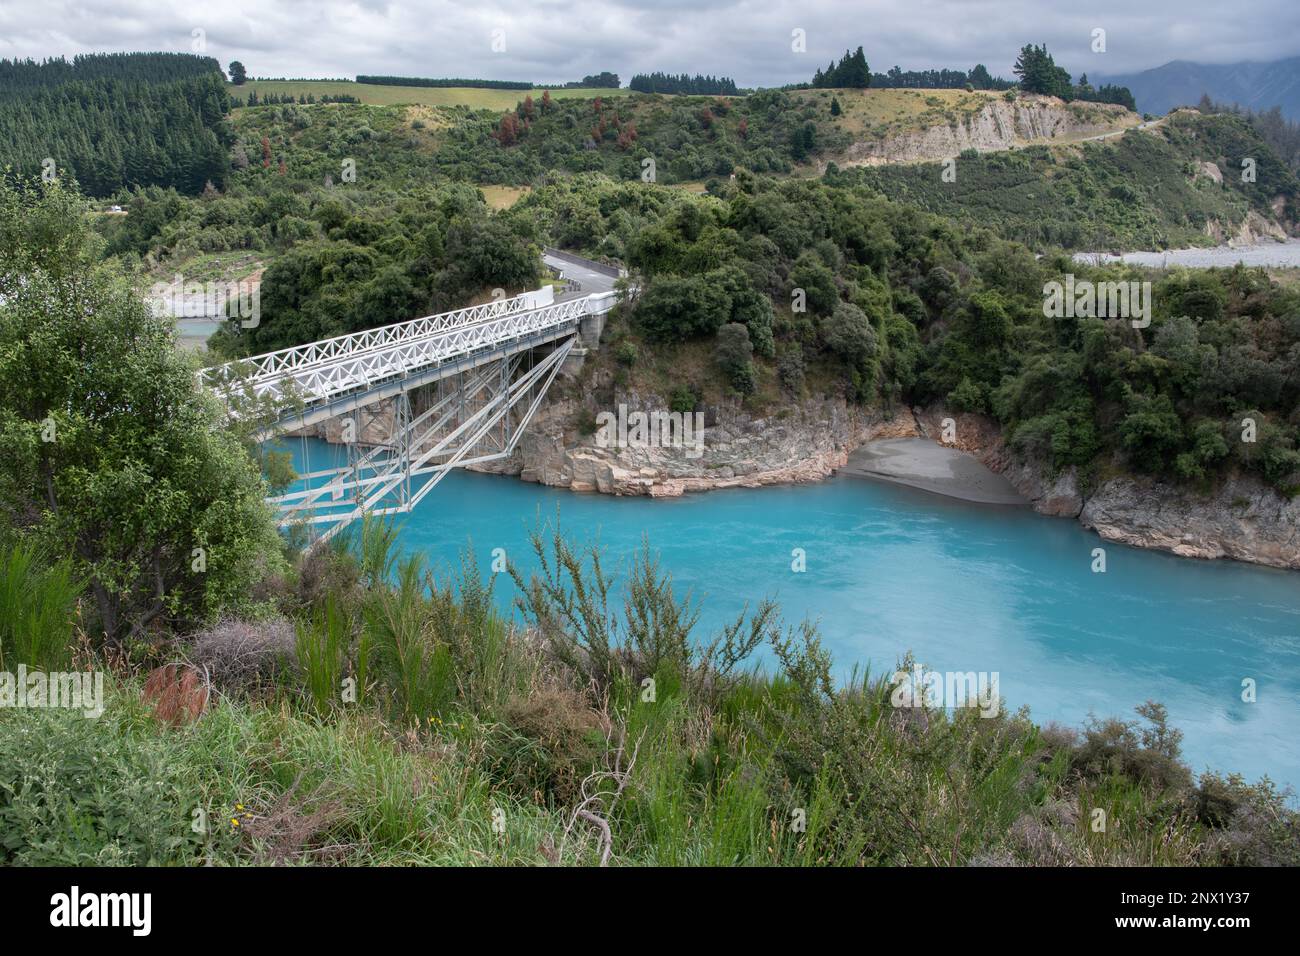 Le vibranti acque blu della gola del fiume Rakaia in Nuova Zelanda mentre le acque fluiscono sotto un ponte bianco. Foto Stock